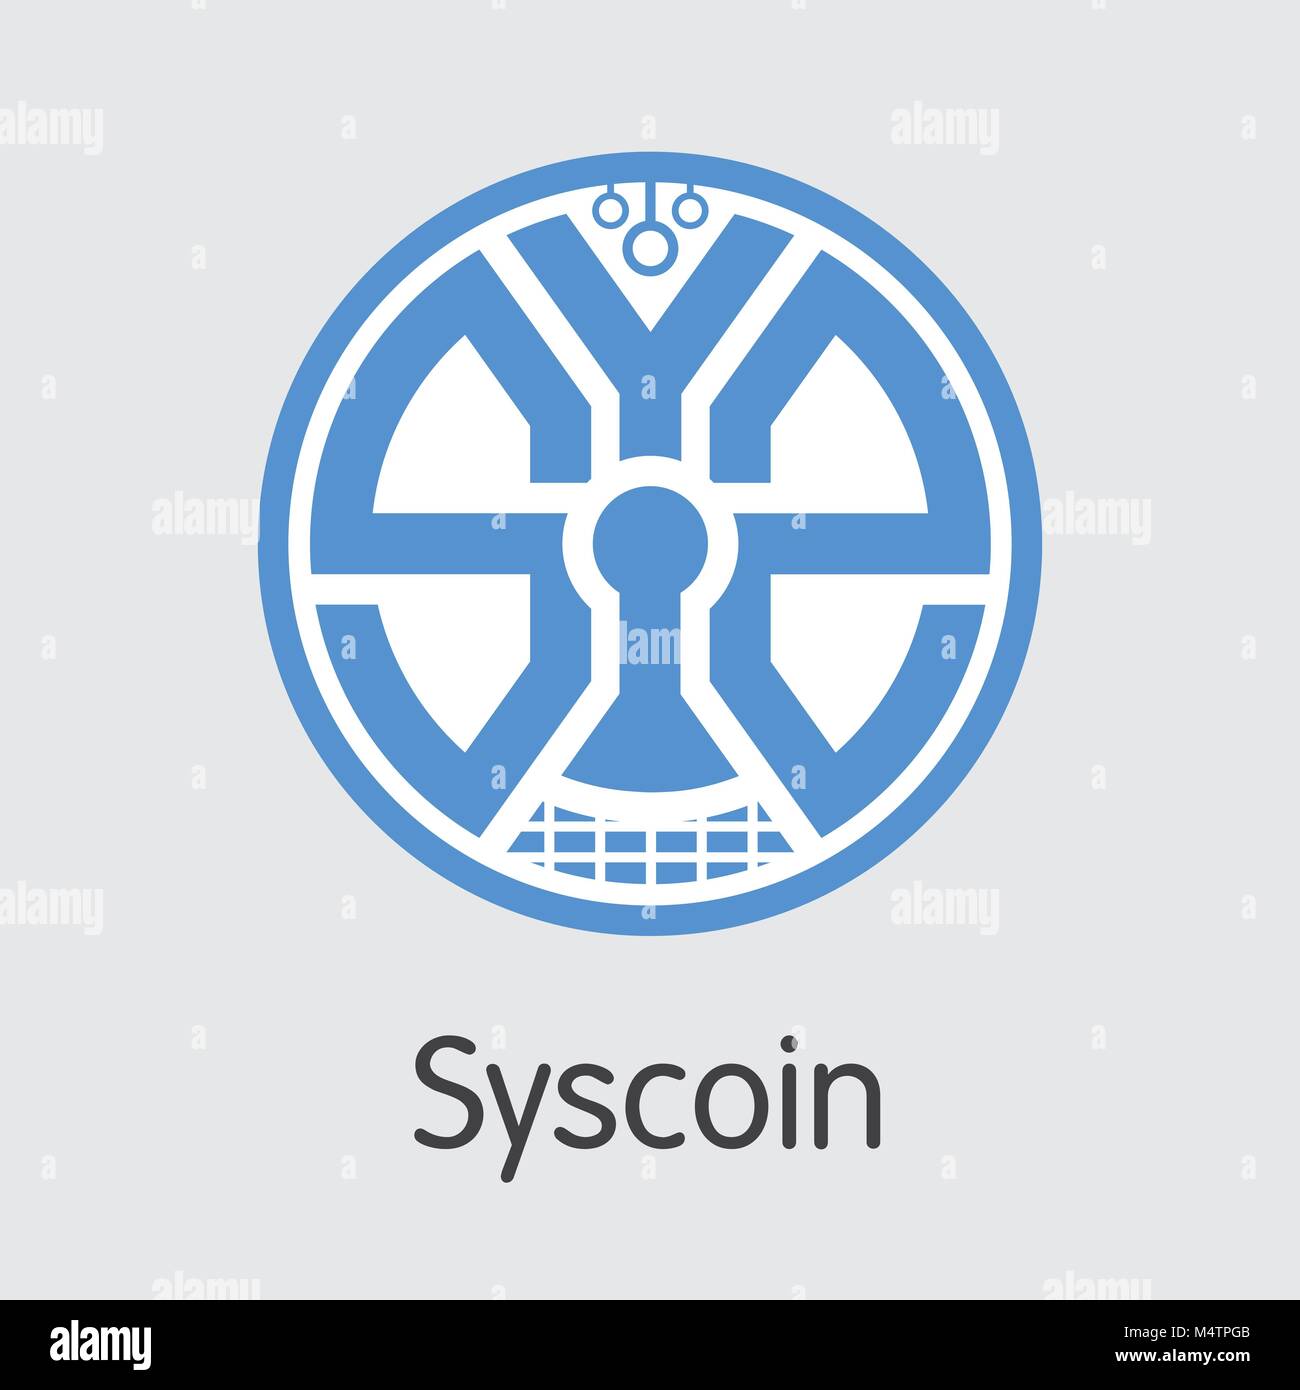 Syscoin valuta digitale. Vector SYS Coin immagine. Illustrazione Vettoriale